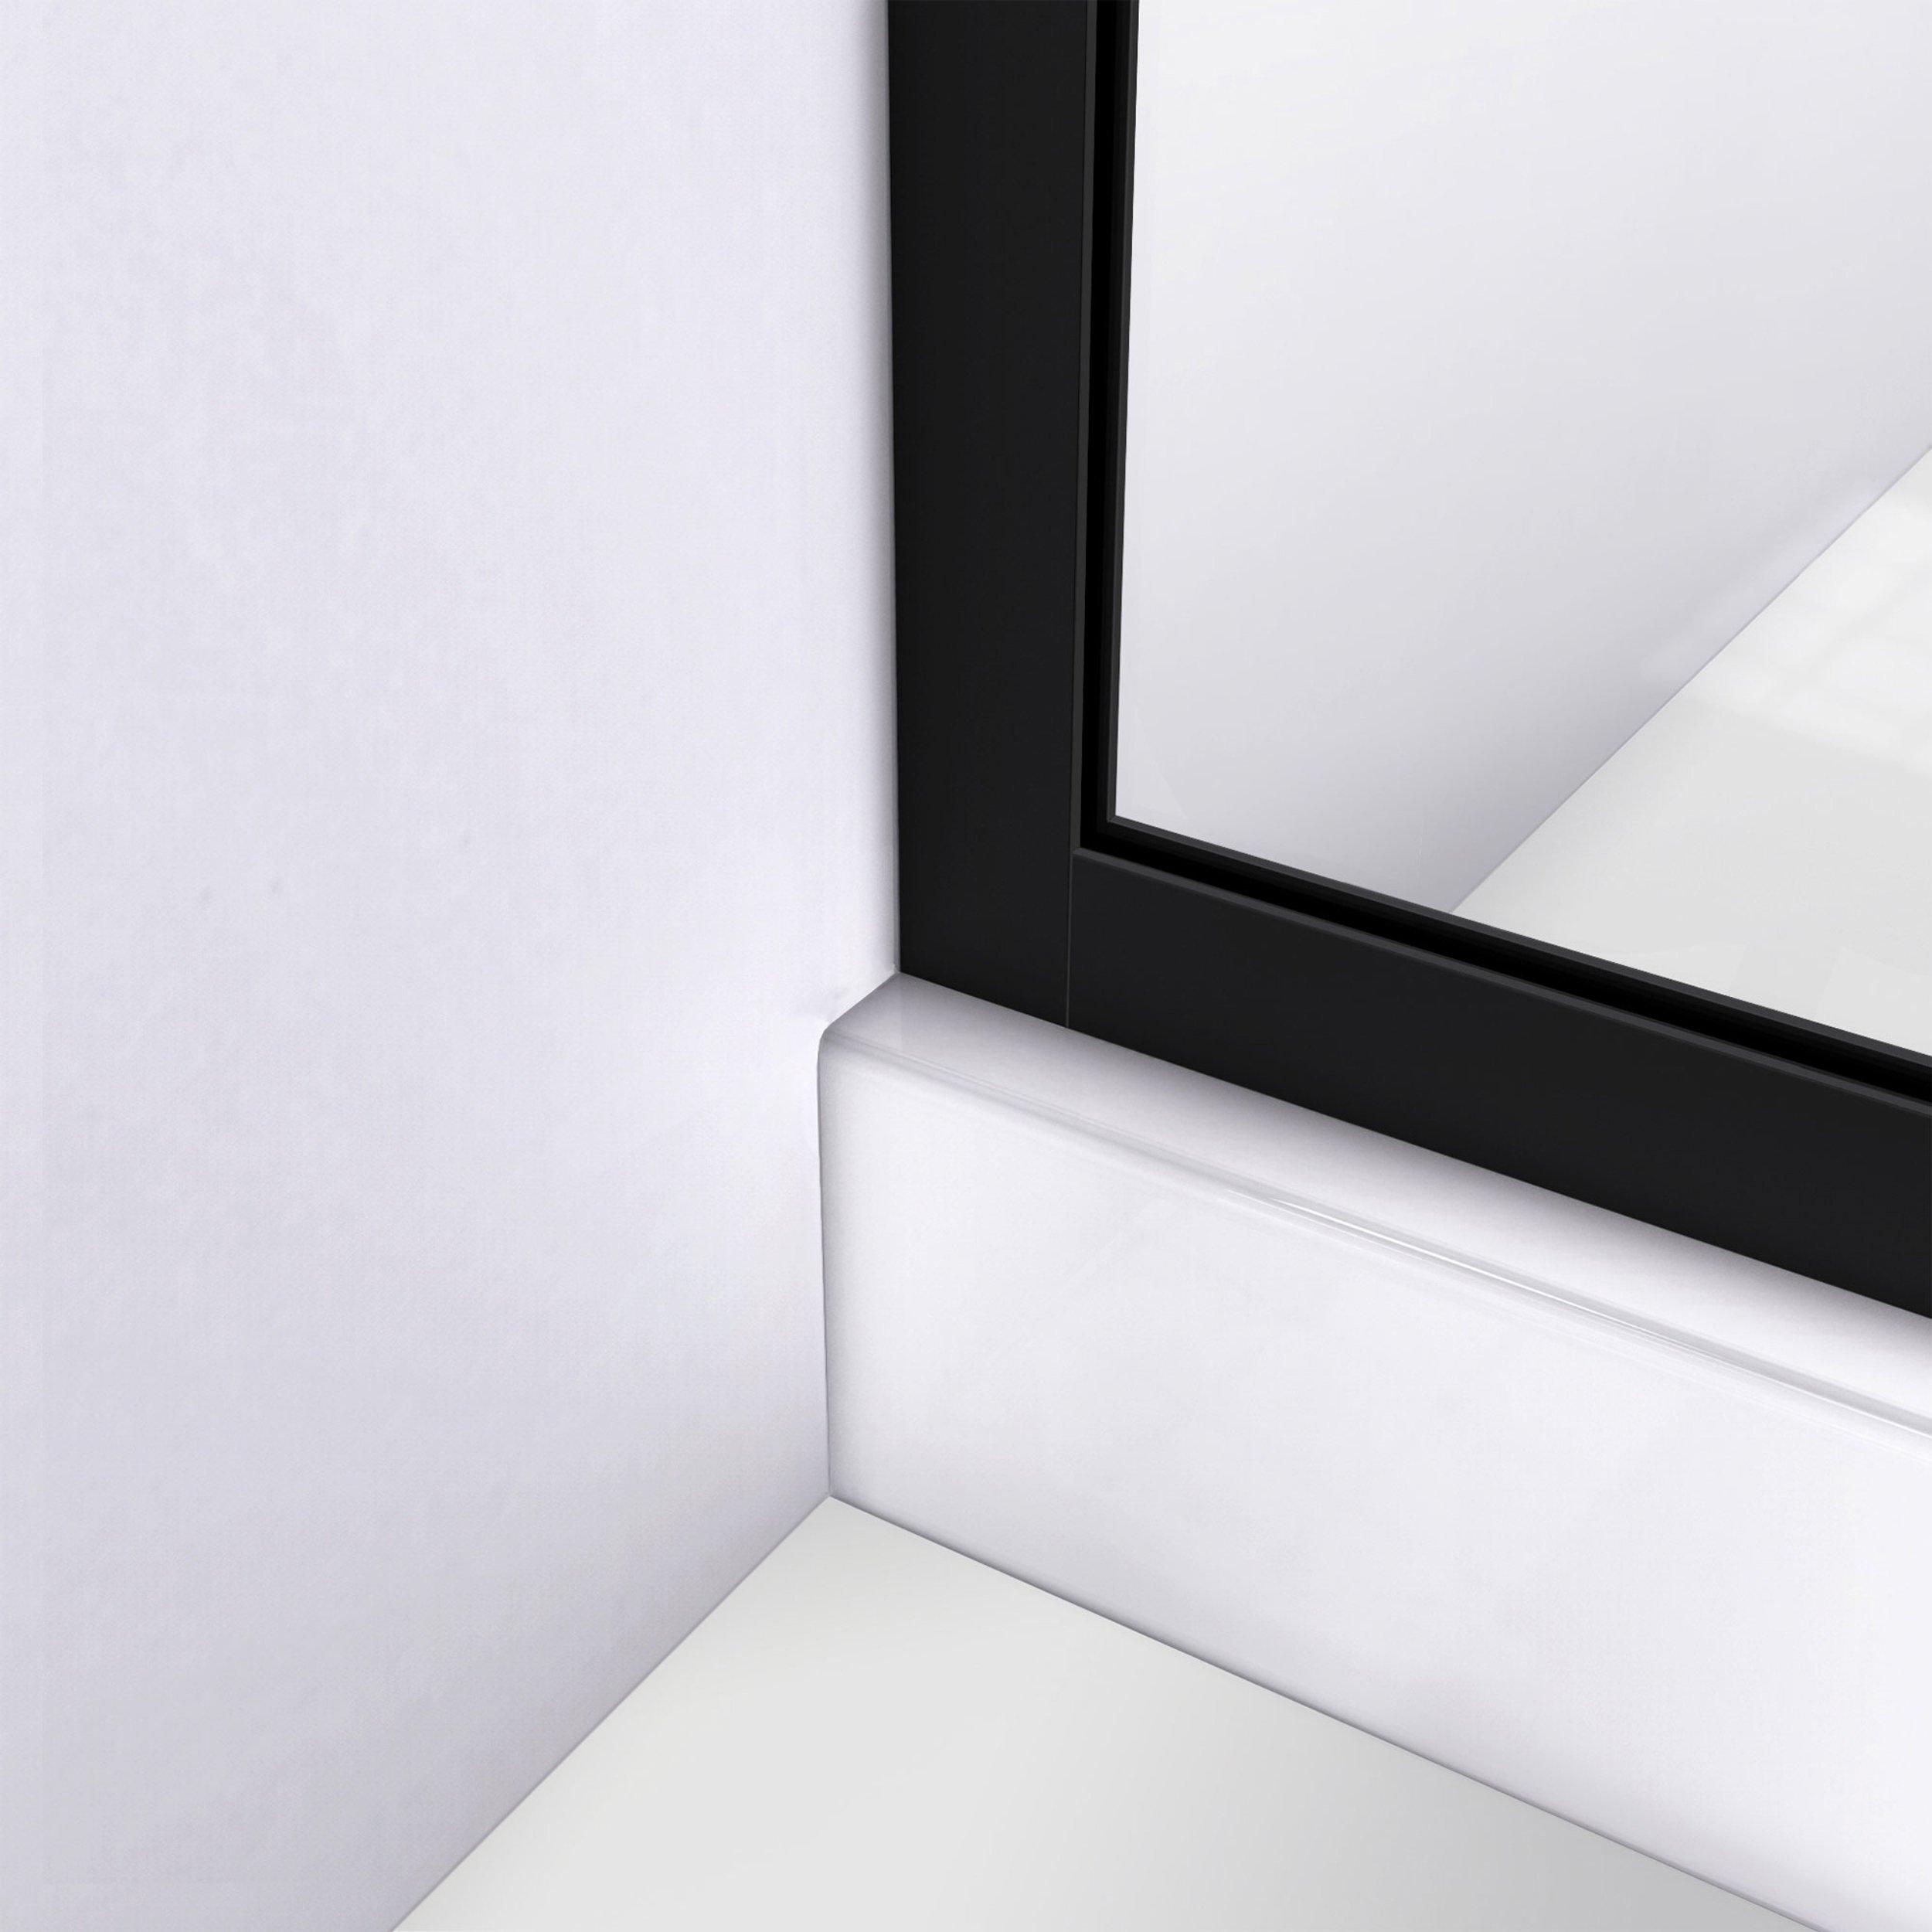 Linea Blossom Satin Black Single Panel Frameless Shower Screen